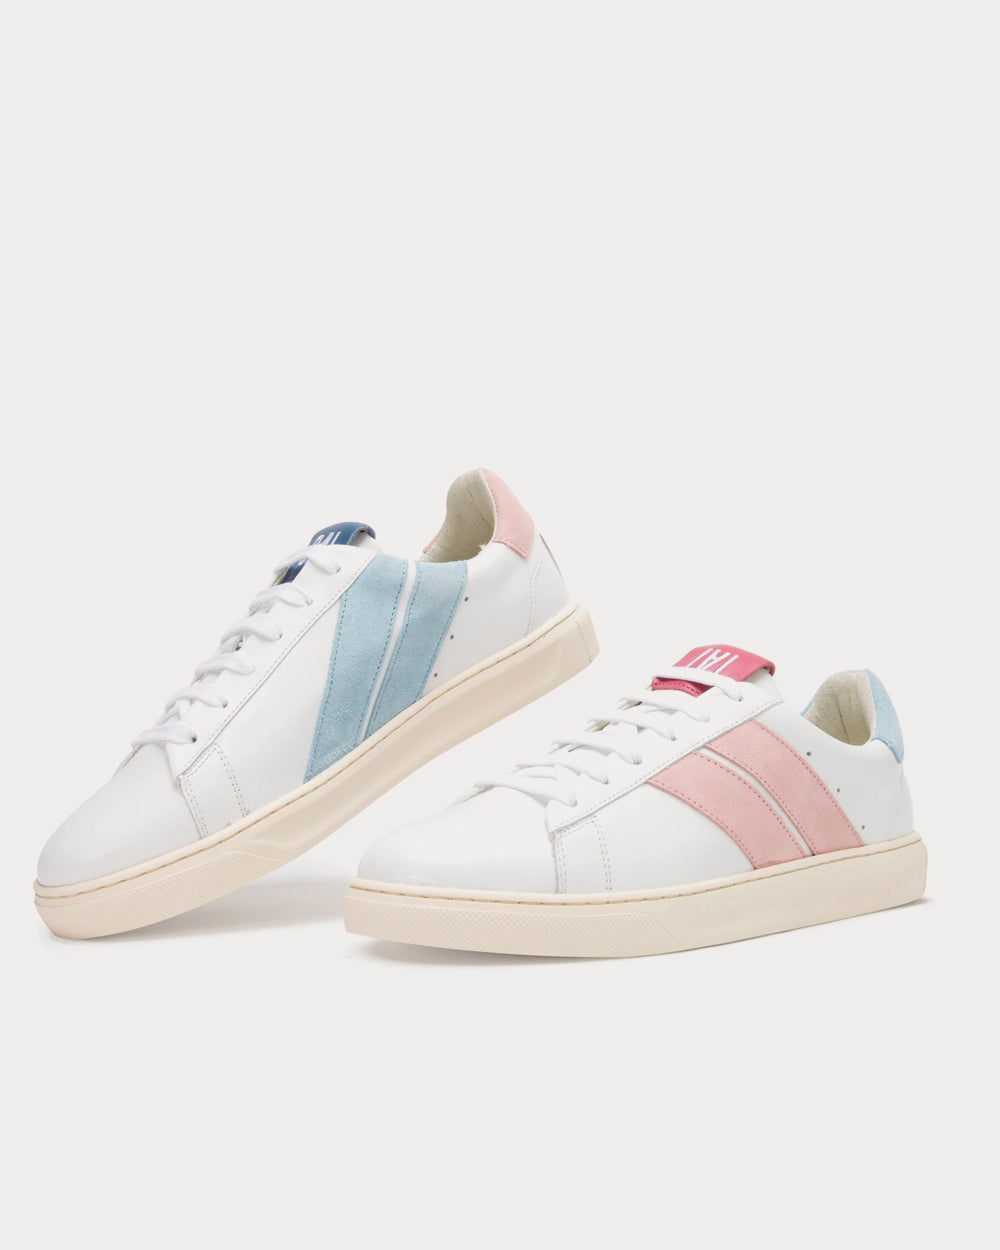 Caval - Mirror Pastel Pink Low Top Sneakers